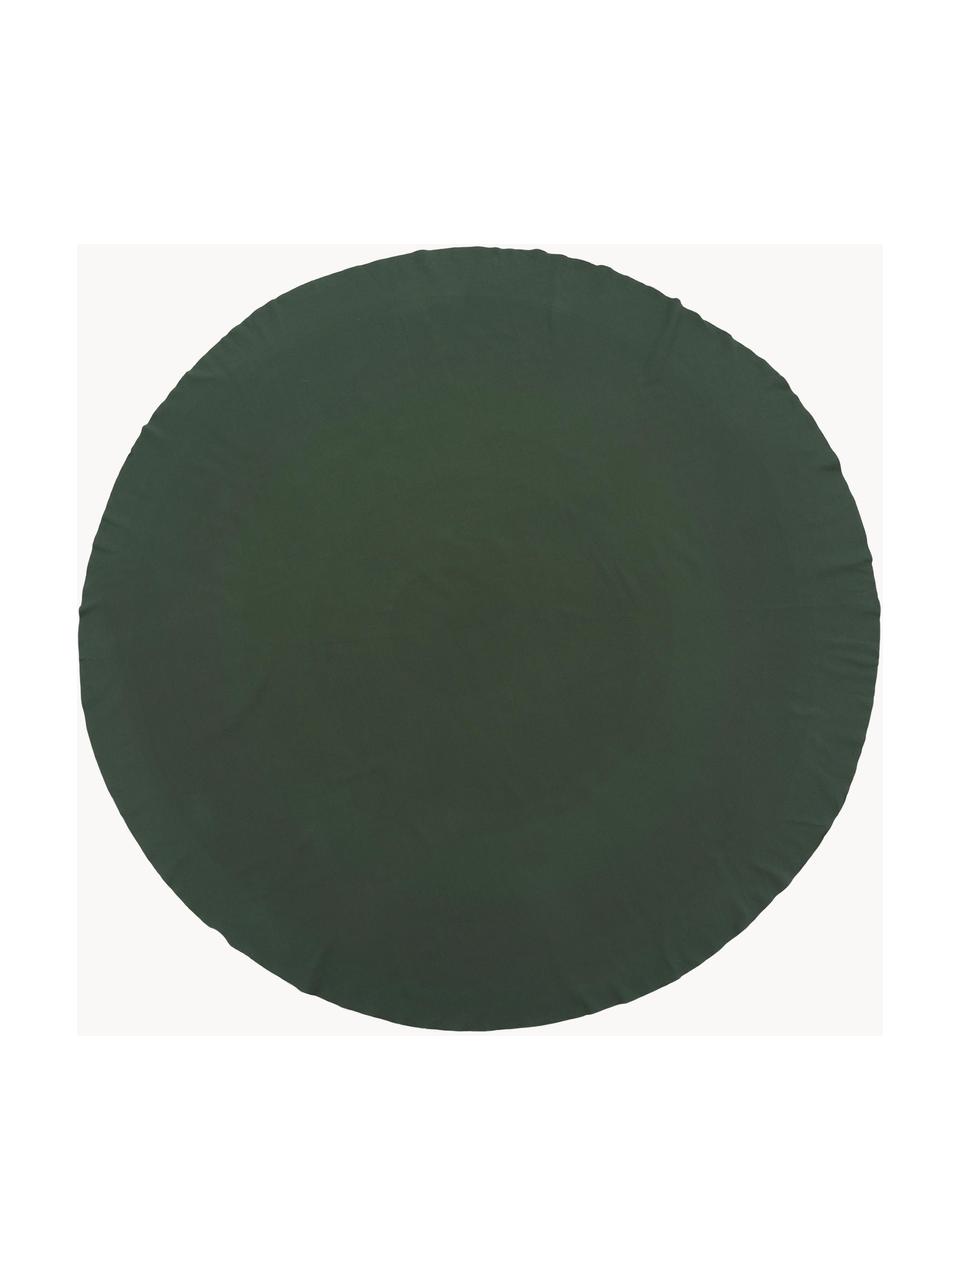 Tovaglietta americana rotonda Wilhelmina, 100% cotone, Verde scuro, 6-8 persone (Ø 200 cm)